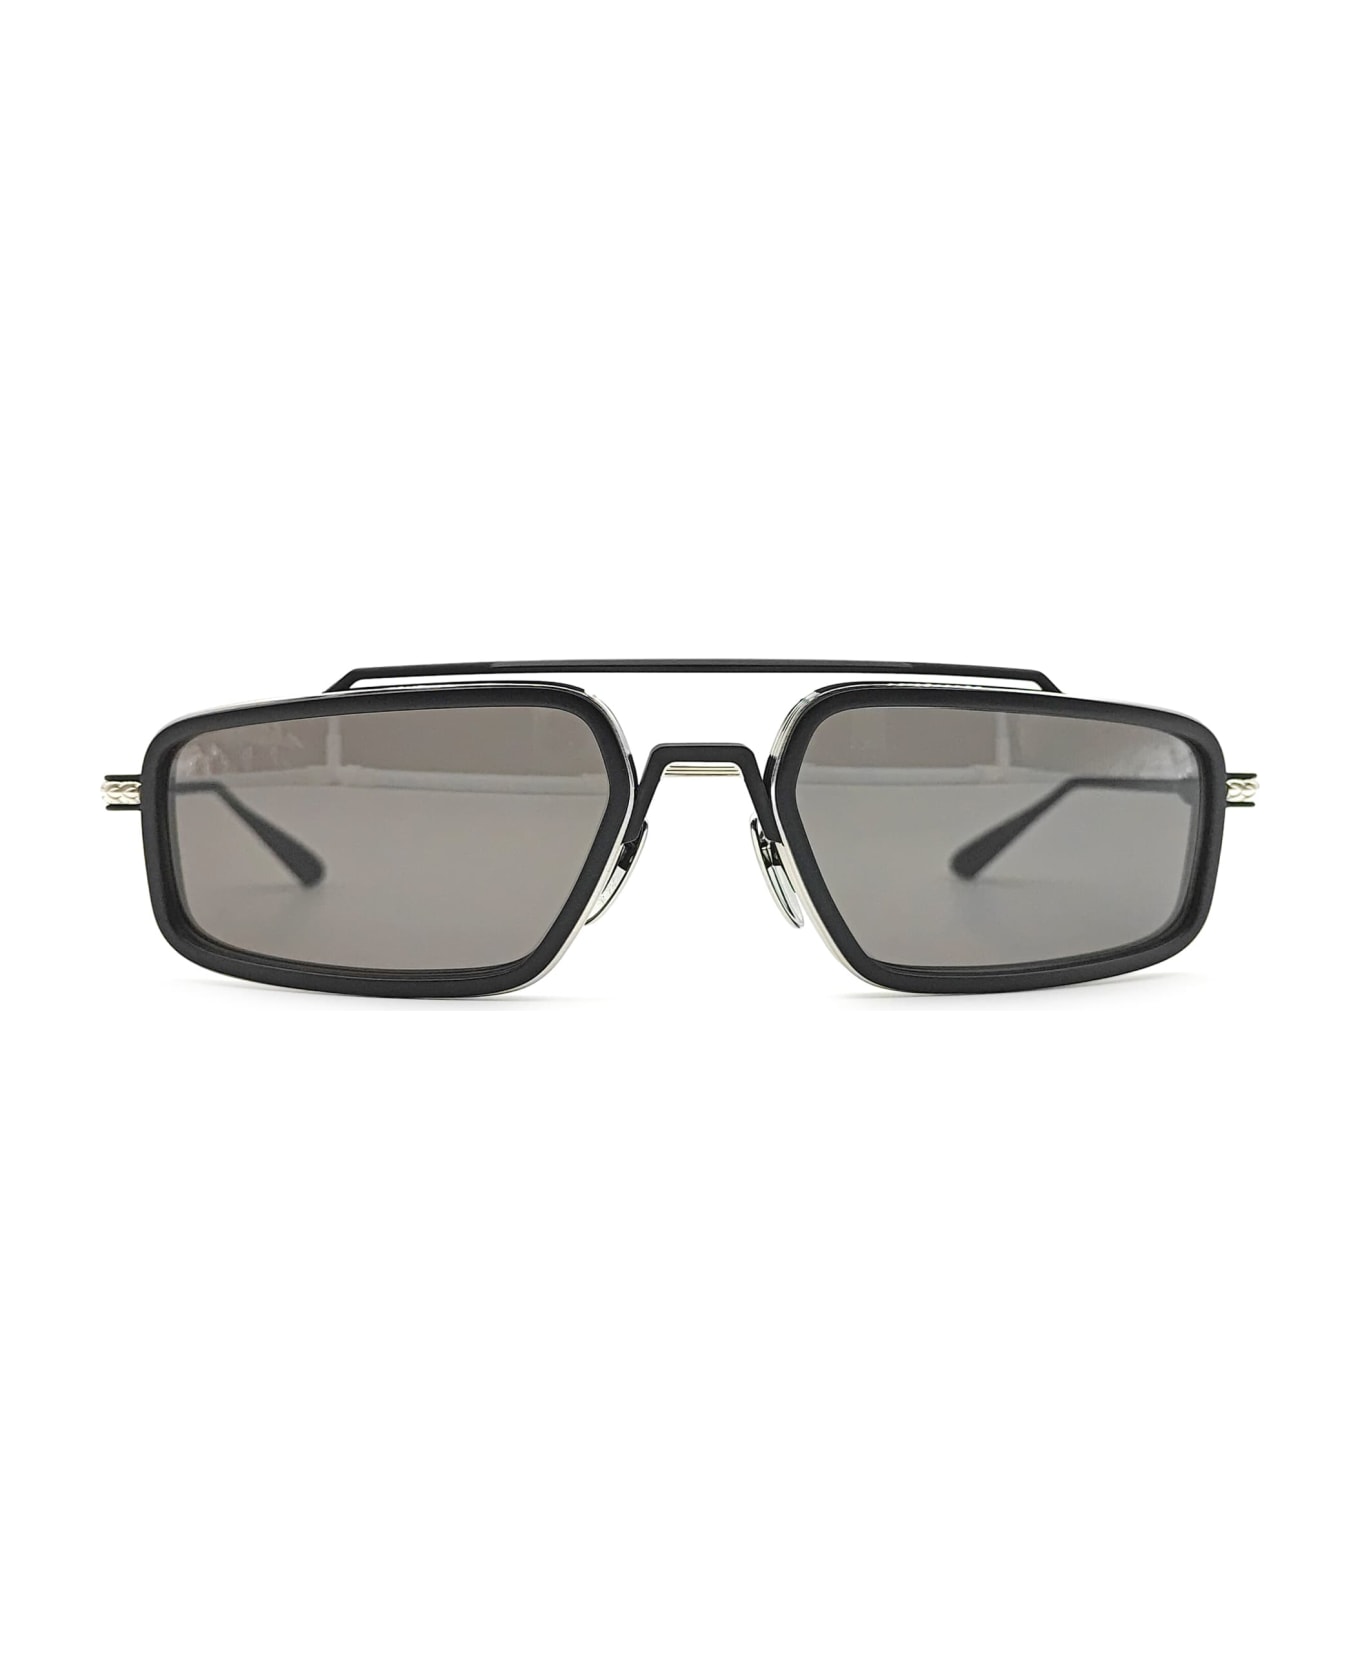 Chrome Hearts Eader - Brushed Silver / Matte Black liam sunglasses - Matte black